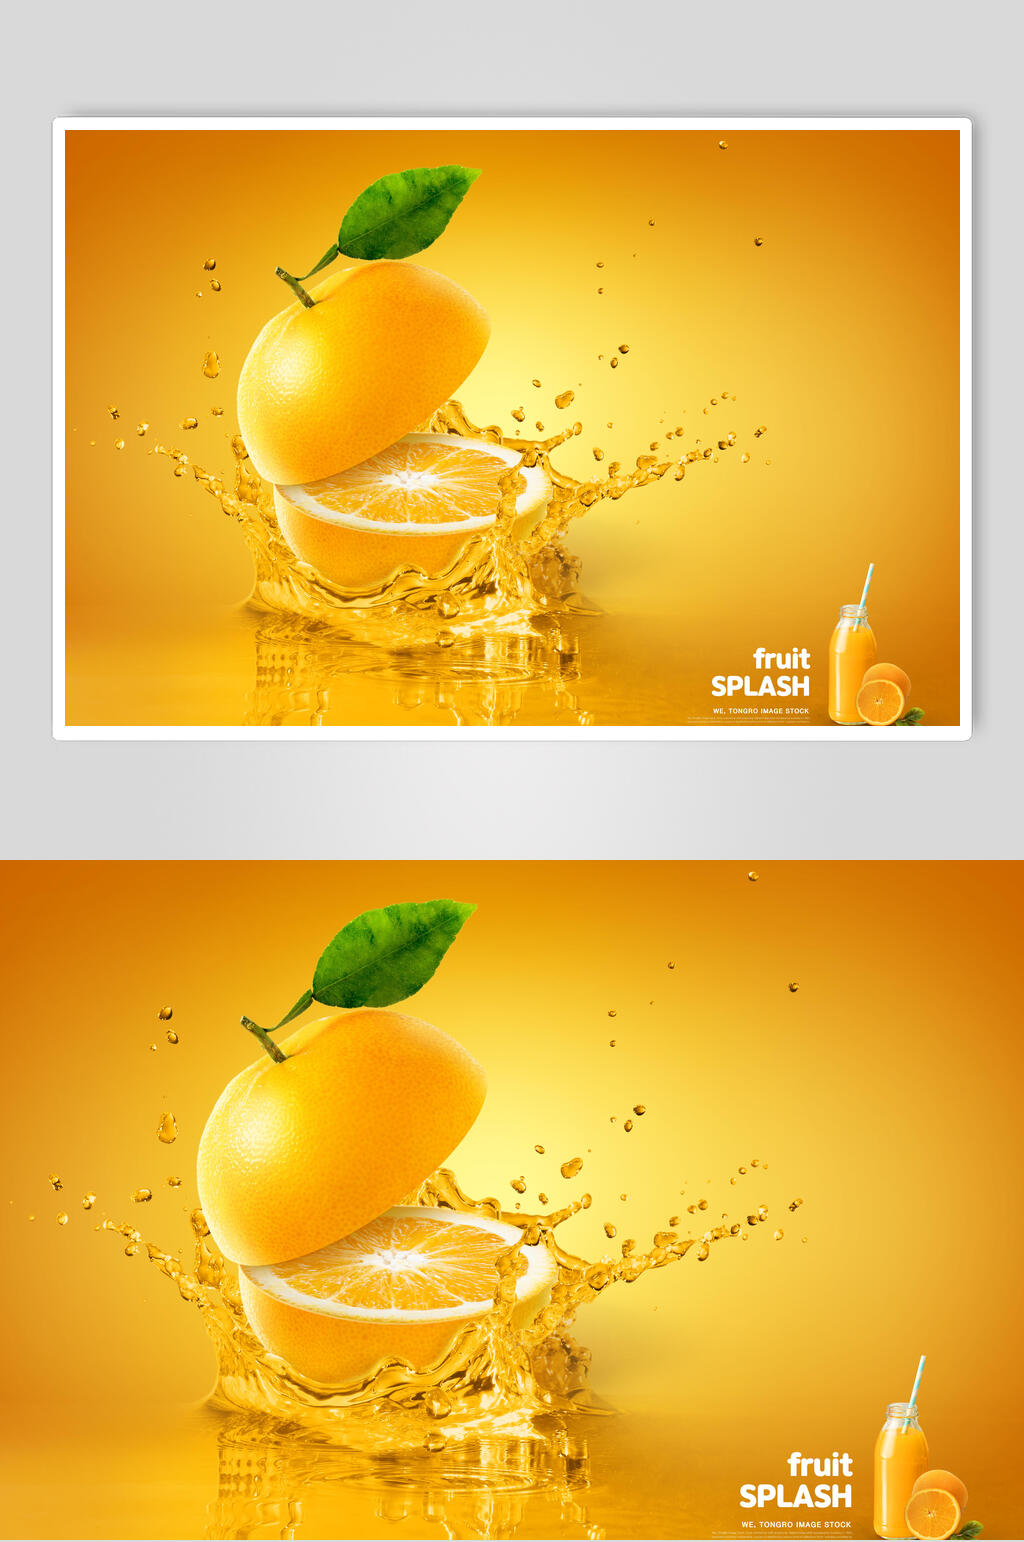 橙子海报图片大全图片